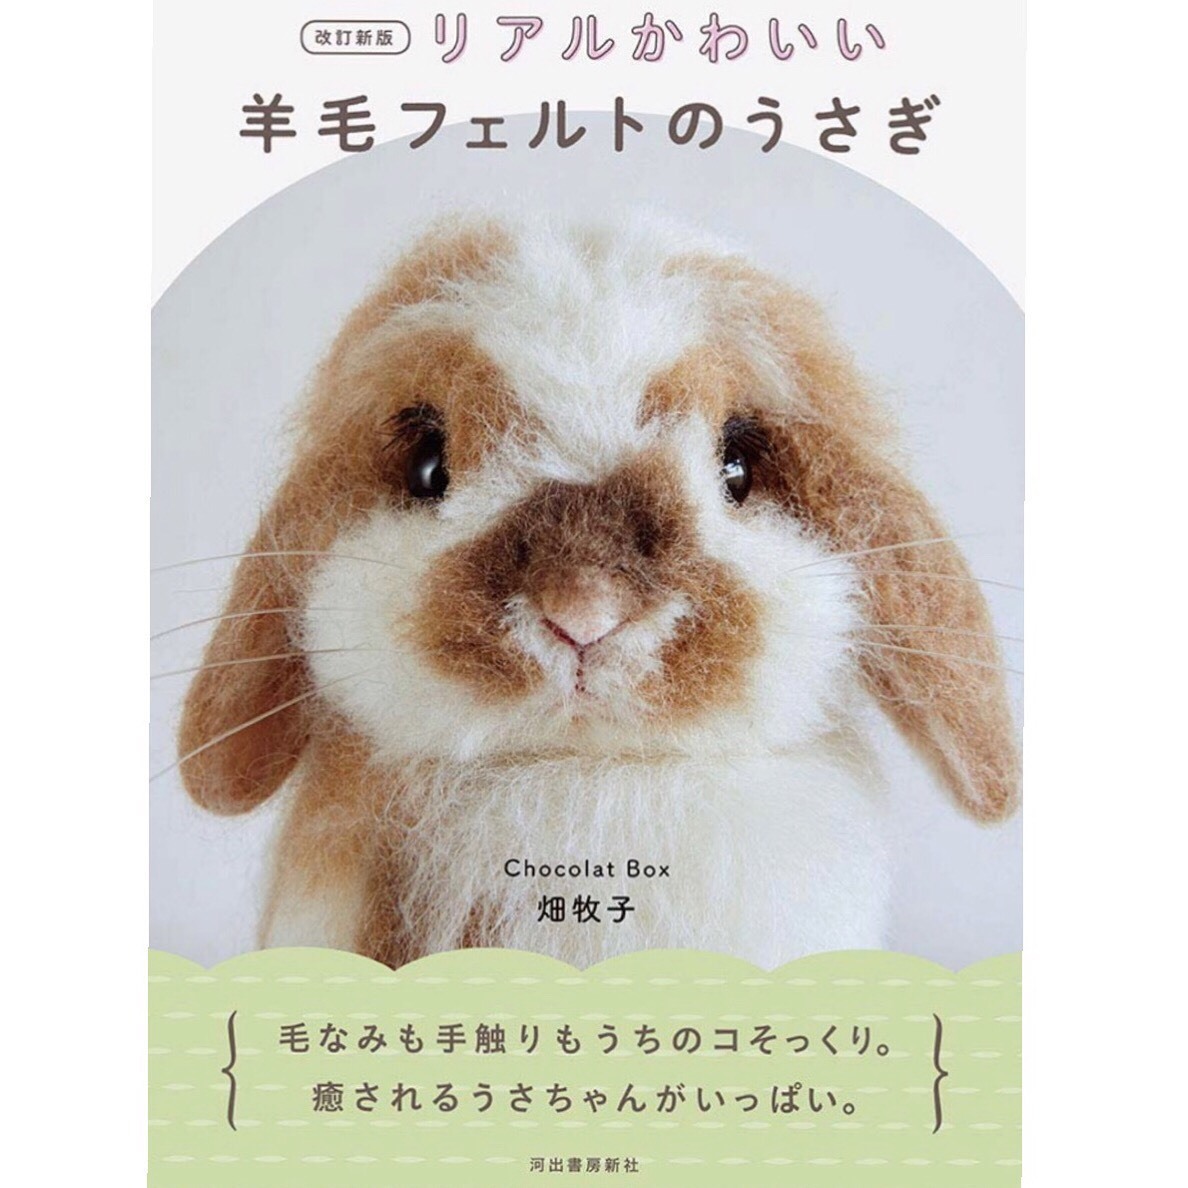 畑牧子先生の著書『羊毛フェルトのうさぎ』